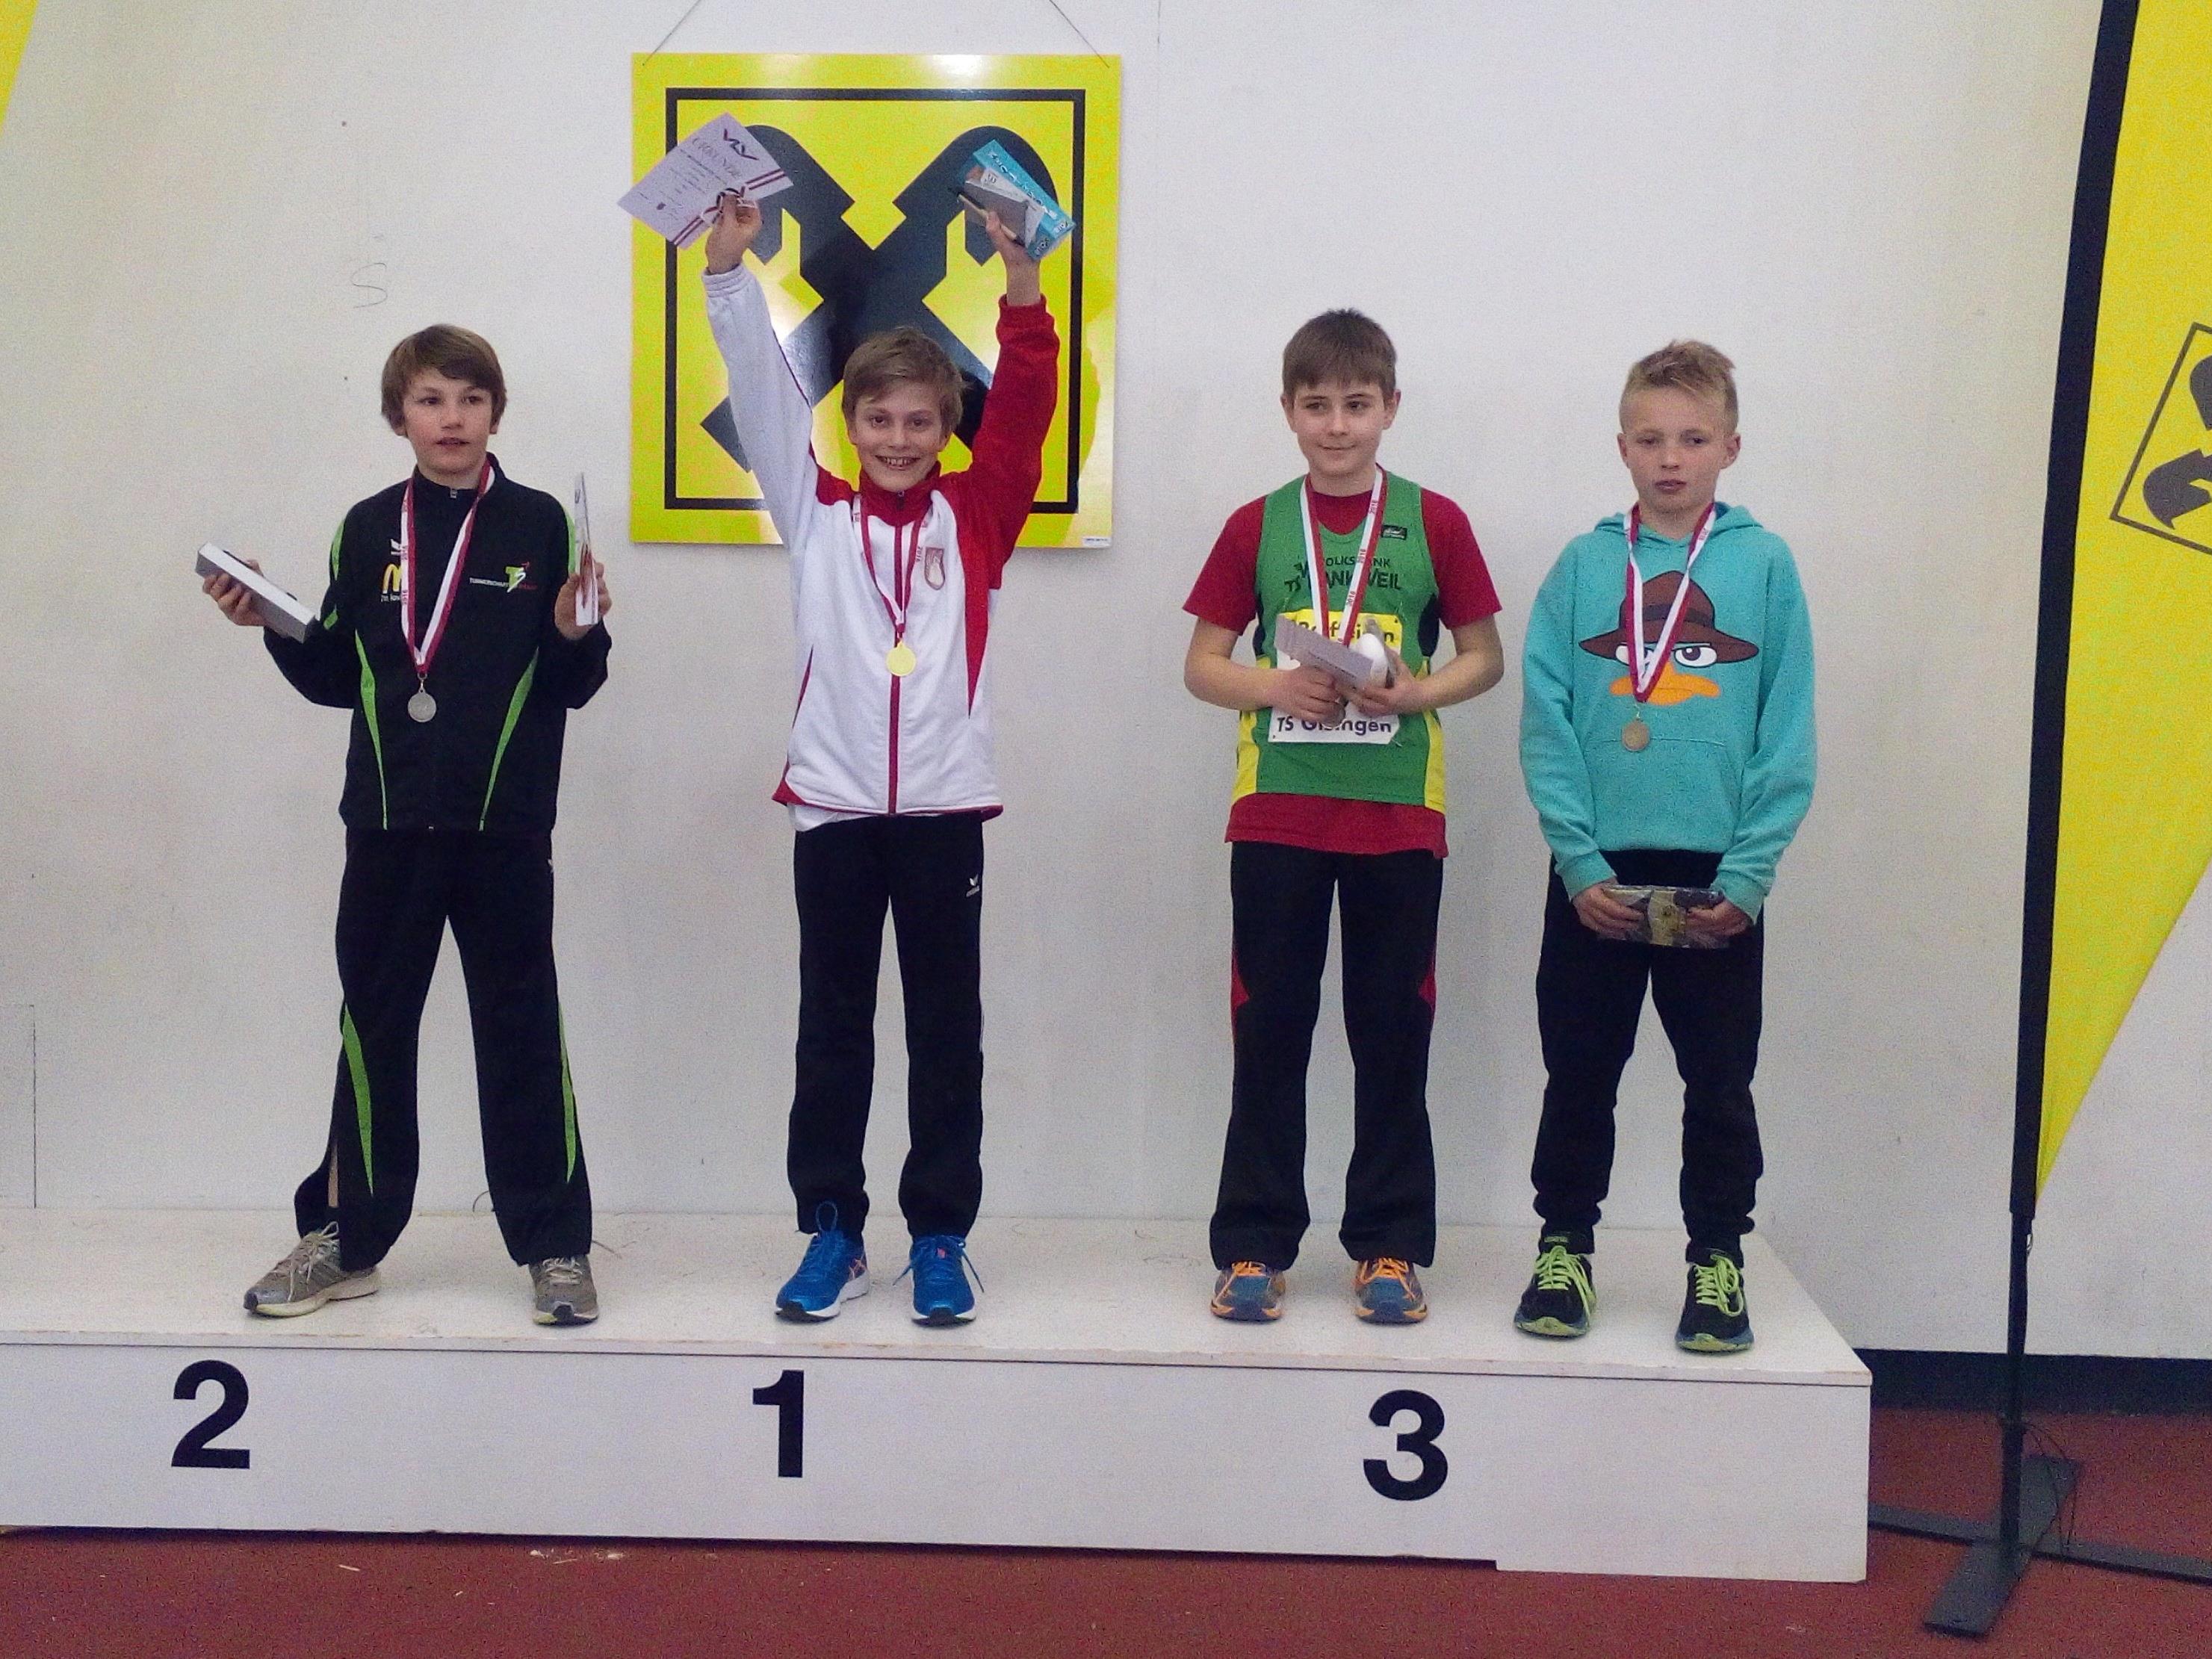 Leon Fürpass vom SV Lochau Leichtathletik hieß der Sieger beim 50-Meter-Sprint in der Klasse MU12 der VLV Leichtathletik Hallenmeisterschaft.